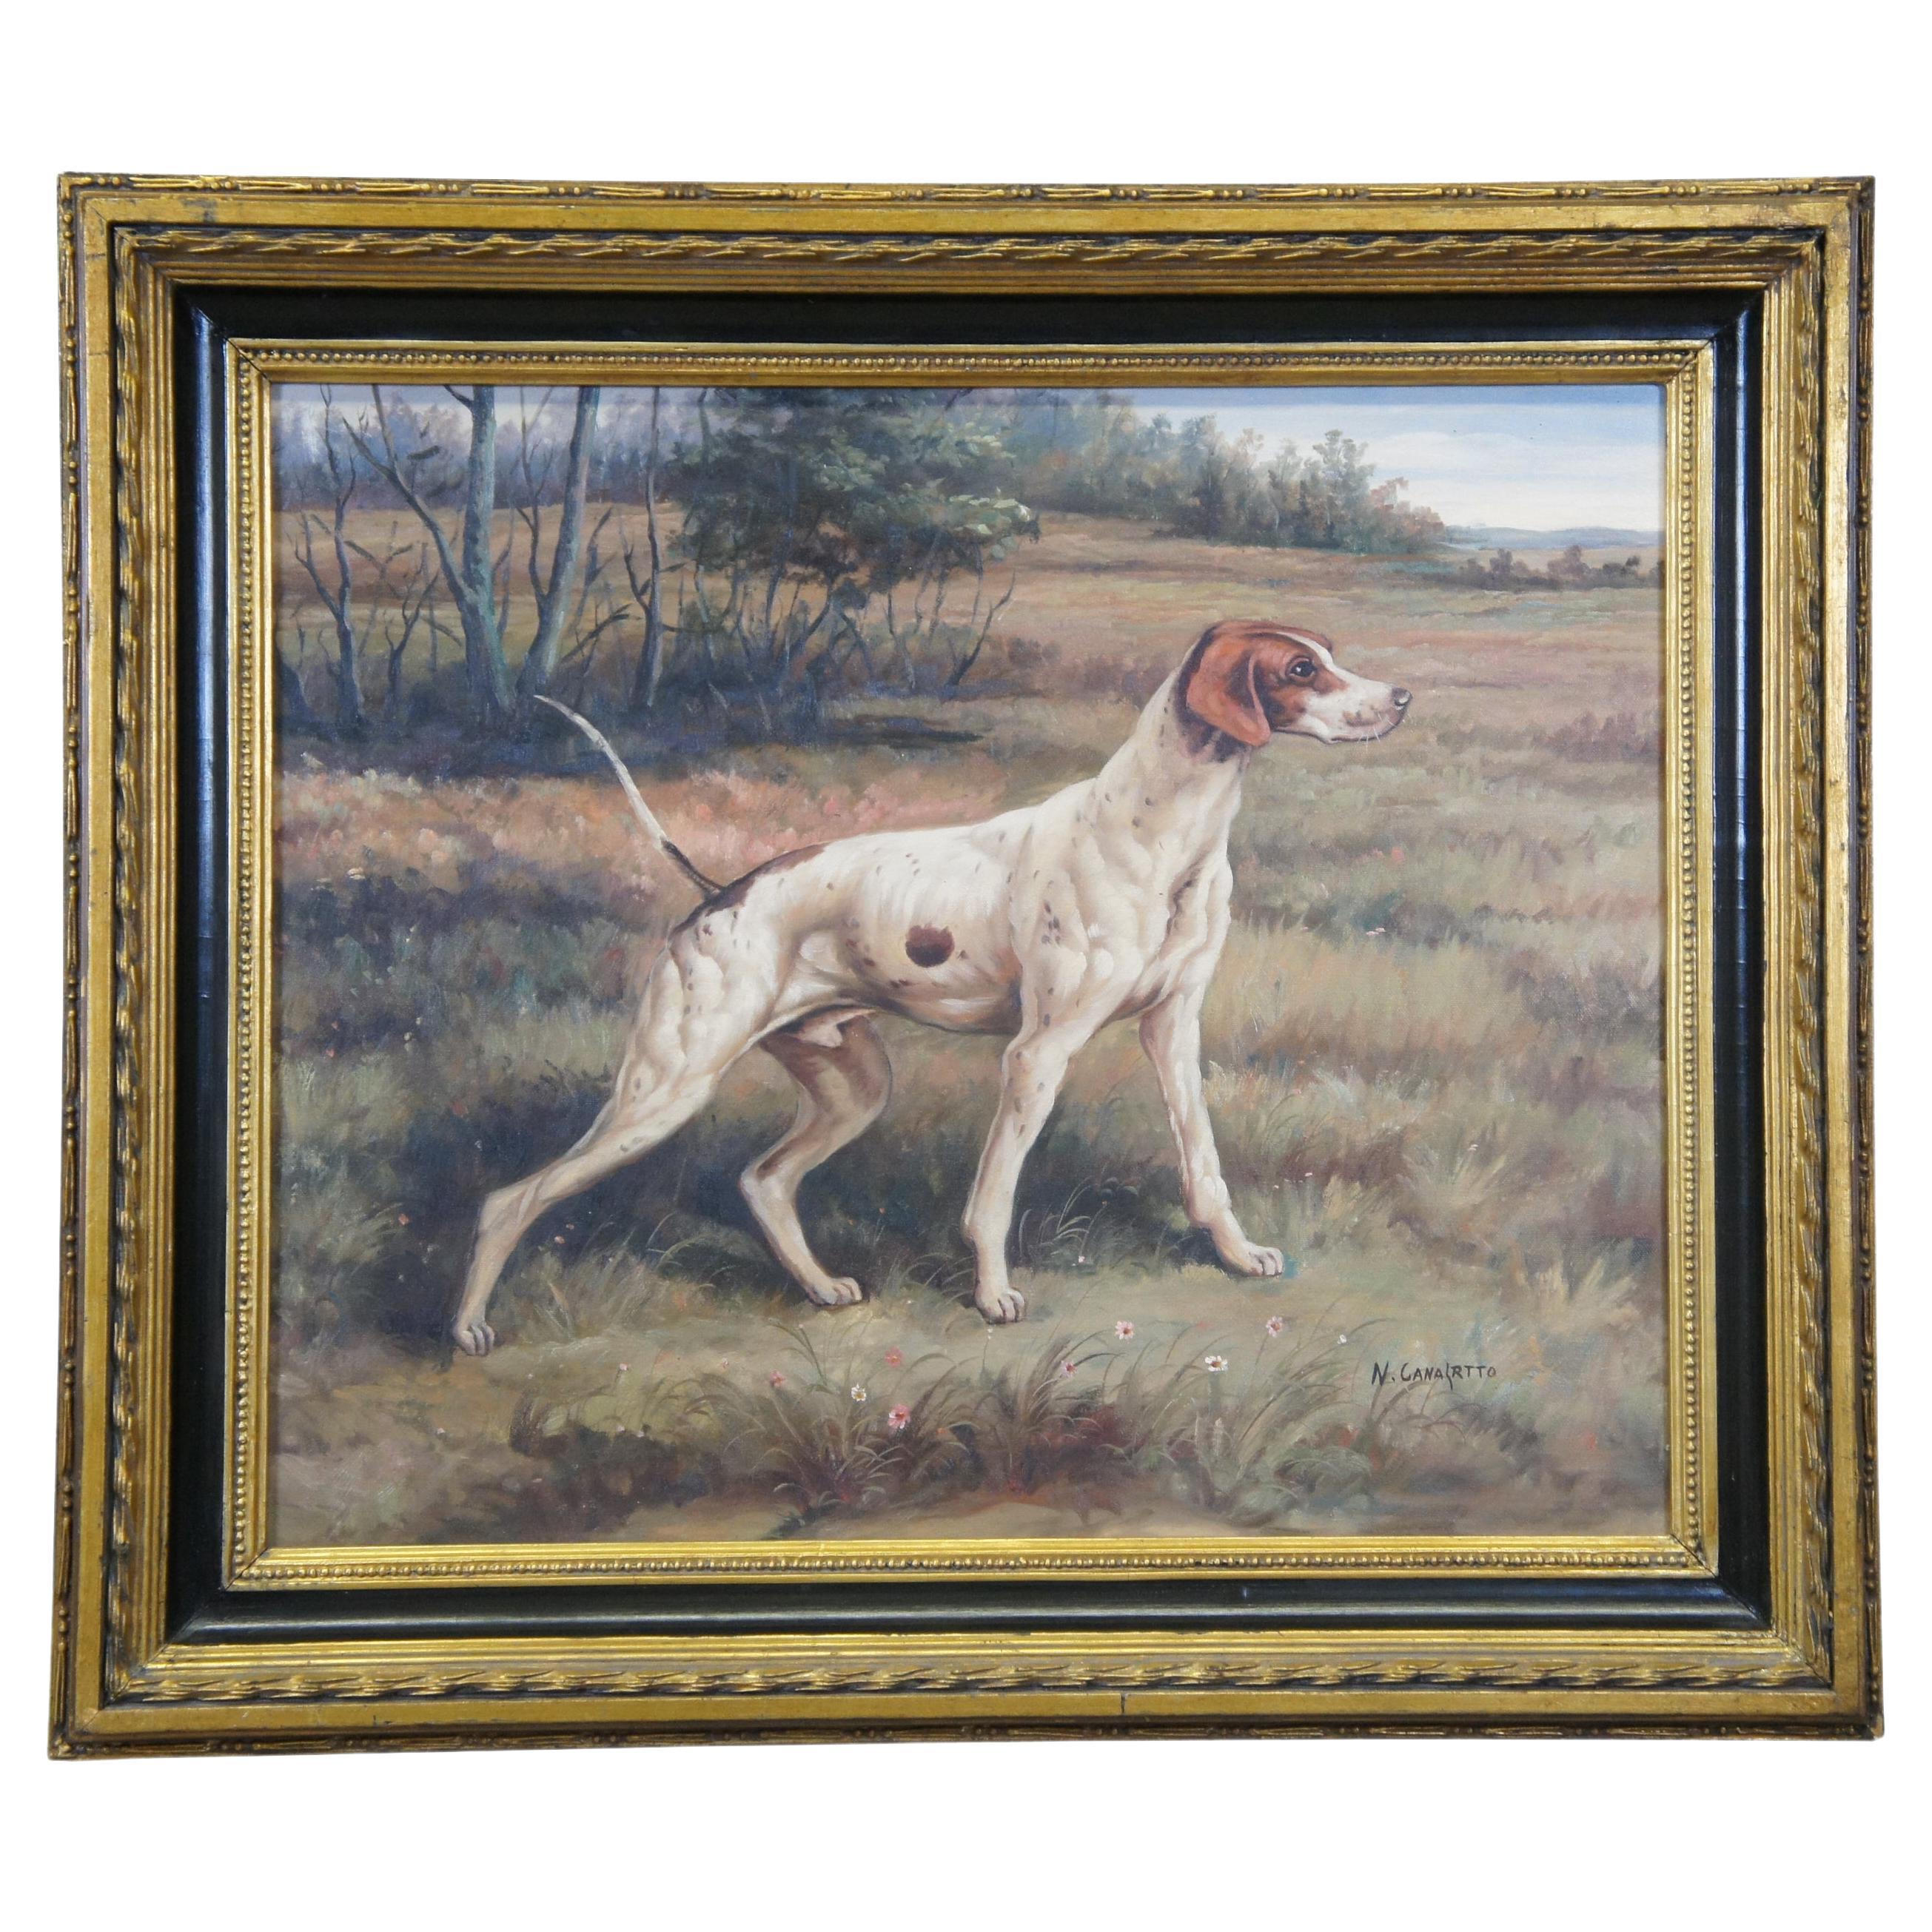 Vintage Pointer Hunting Dog Landscape Portrait Peinture à l'huile sur toile 31"